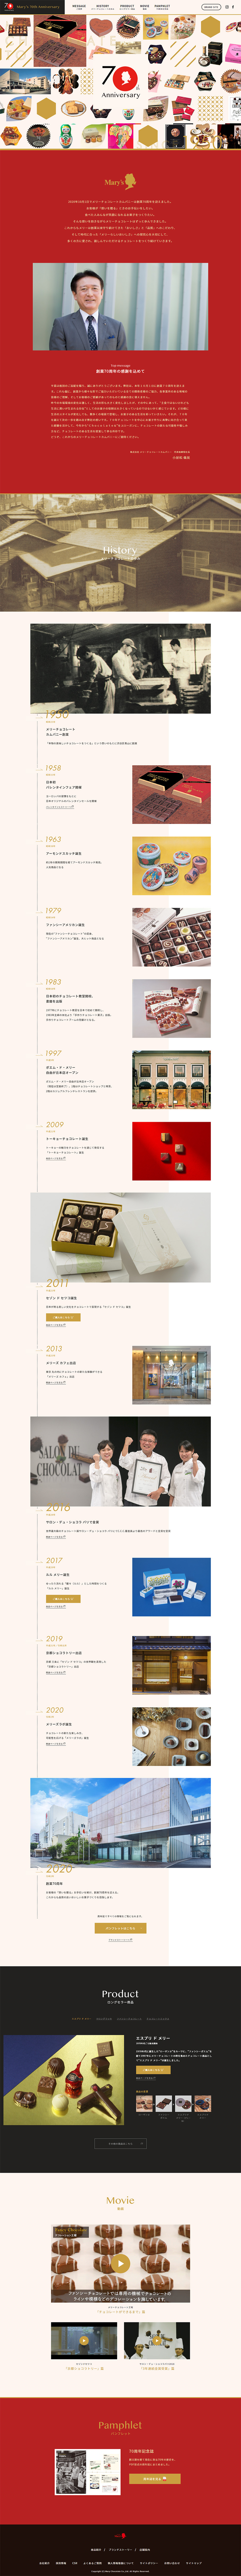 メリーチョコレートカムパニー70周年記念サイト_pc_1